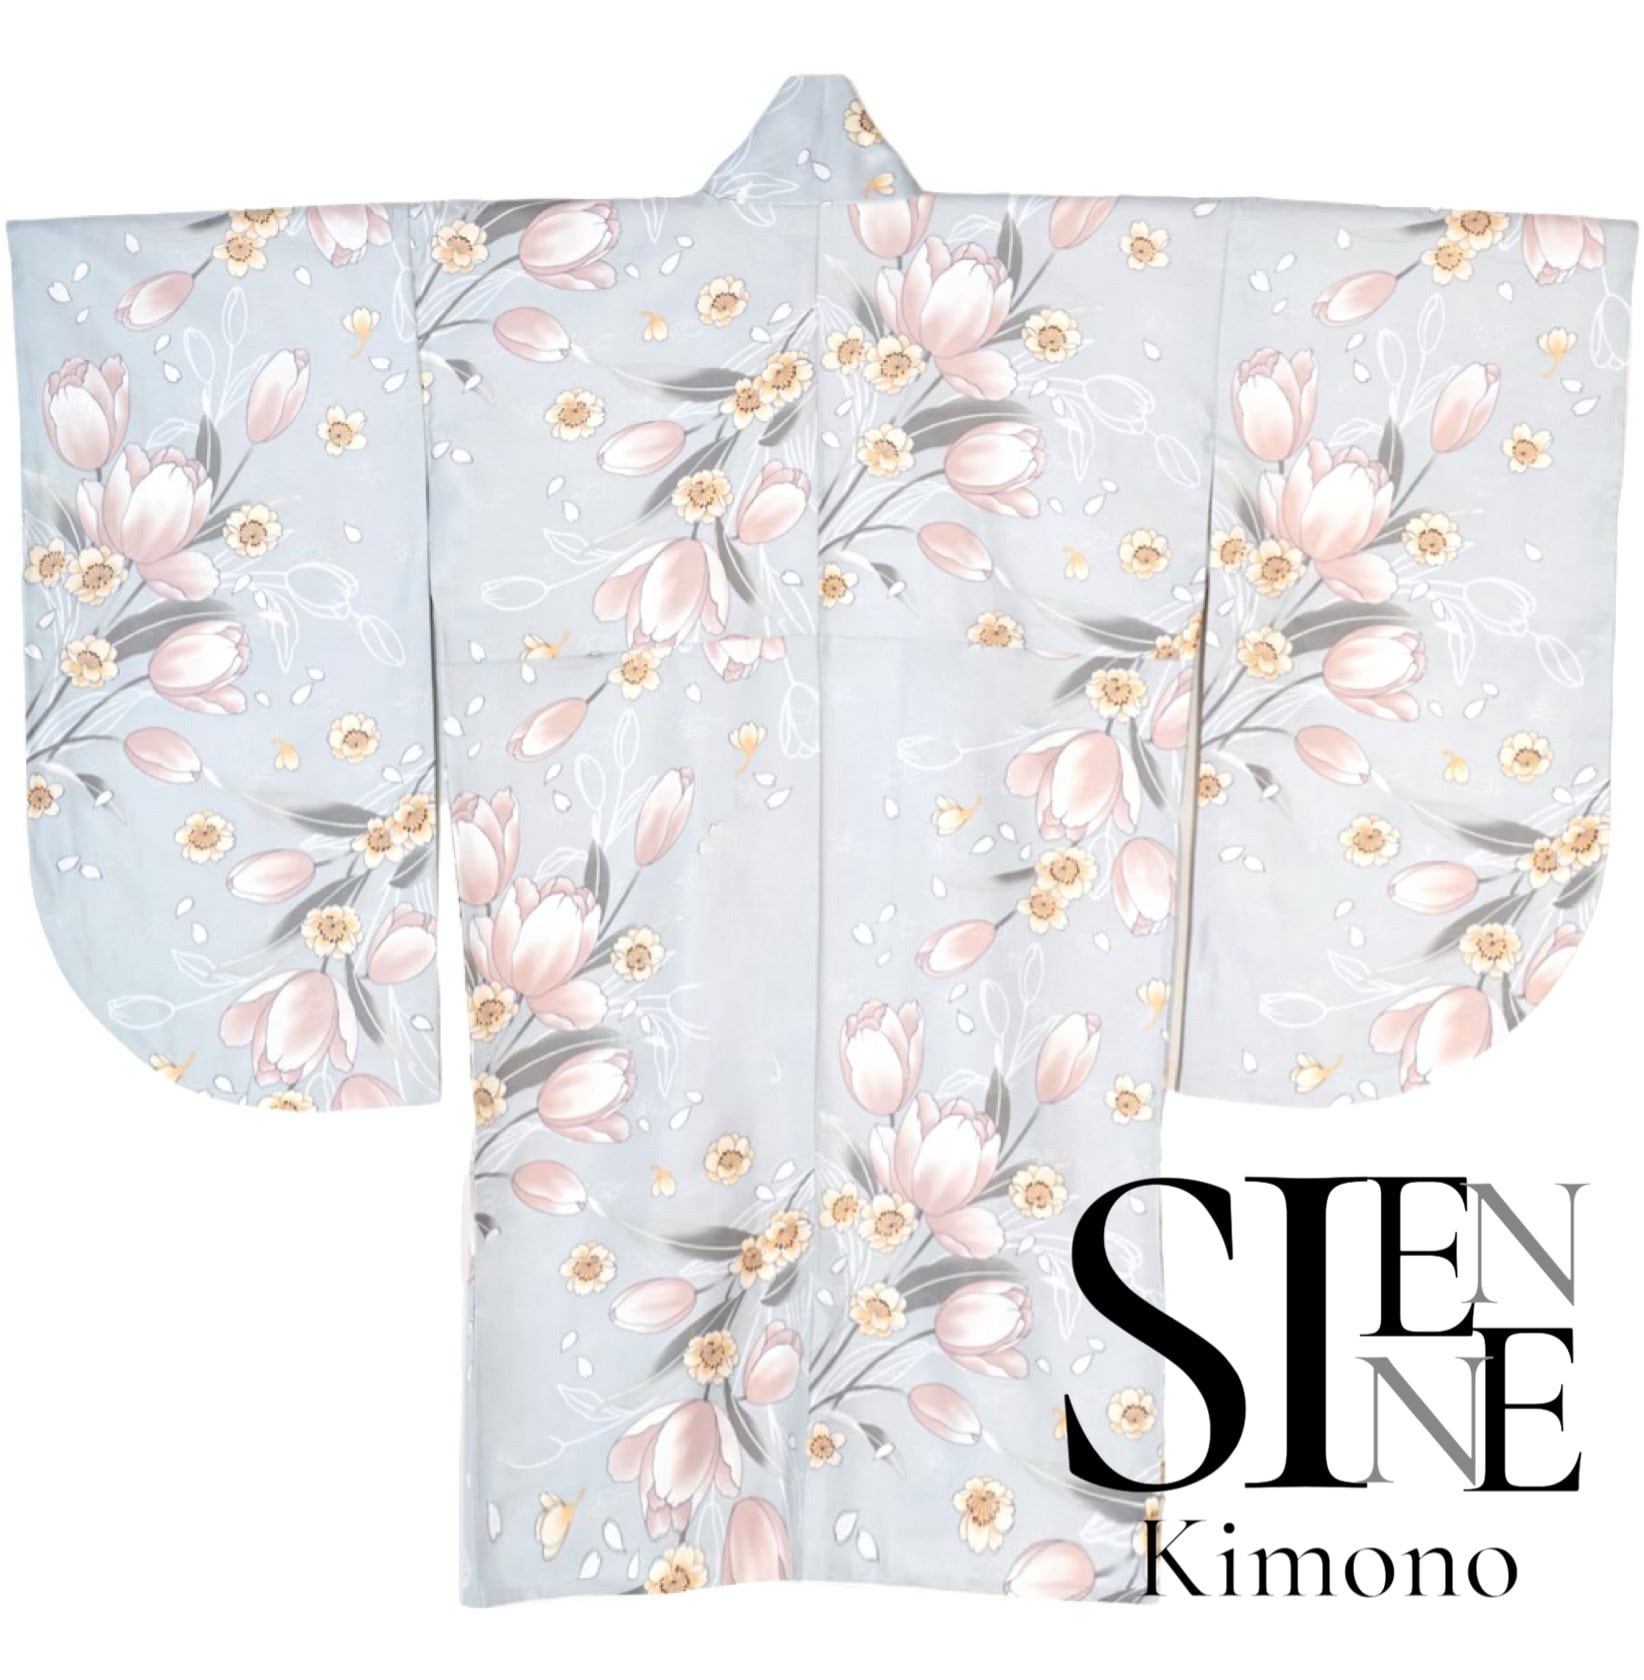 新作 卒業式 袴 袴用二尺袖 着物 単品 シフォン素材 ライトグレー